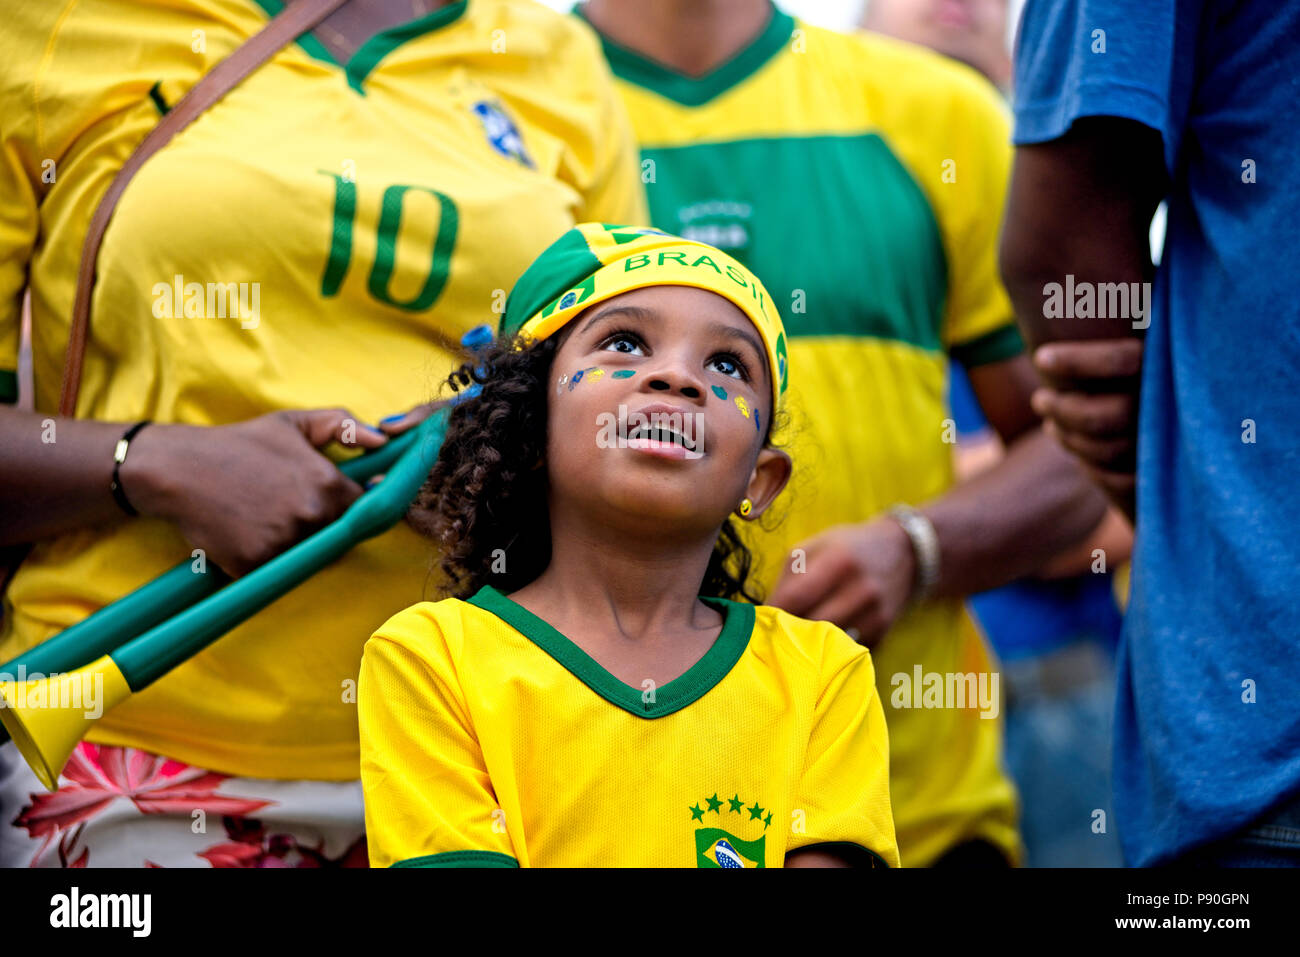 Brasilien - 27. Juni 2018: jungen brasilianischen Lüfter reagiert, wie sie Uhren Ihr Team spielen gegen Serbien an einer freien Welt Cup Betrachtung Partei in Rio de Janeiro Stockfoto